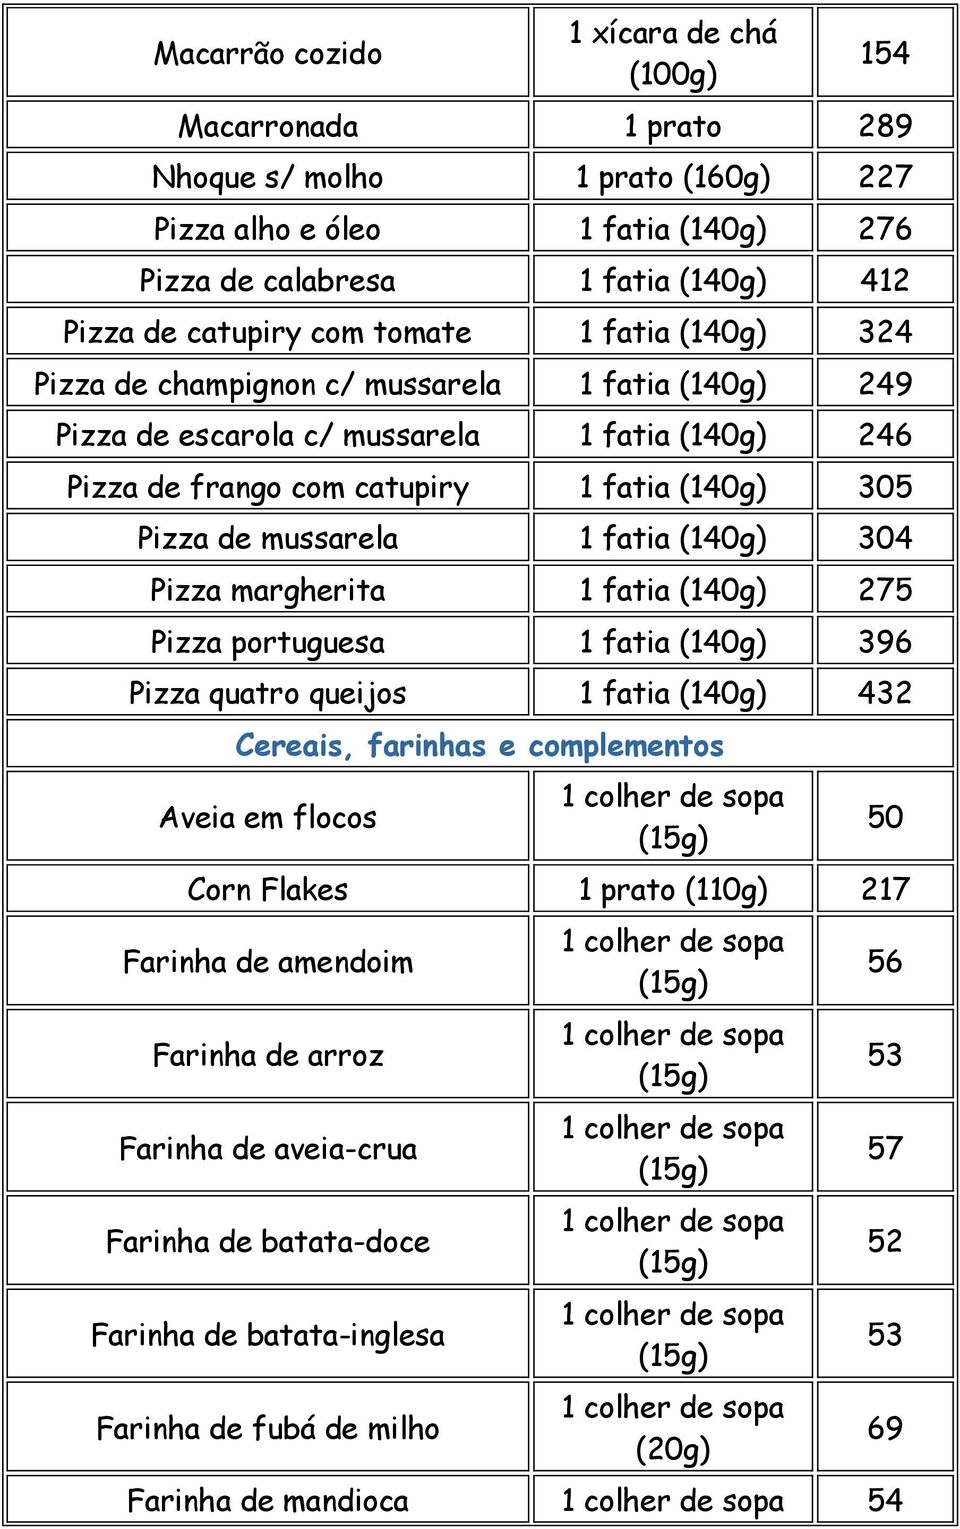 mussarela 1 fatia (140g) 304 Pizza margherita 1 fatia (140g) 275 Pizza portuguesa 1 fatia (140g) 396 Pizza quatro queijos 1 fatia (140g) 432 Cereais, farinhas e complementos Aveia em flocos 50